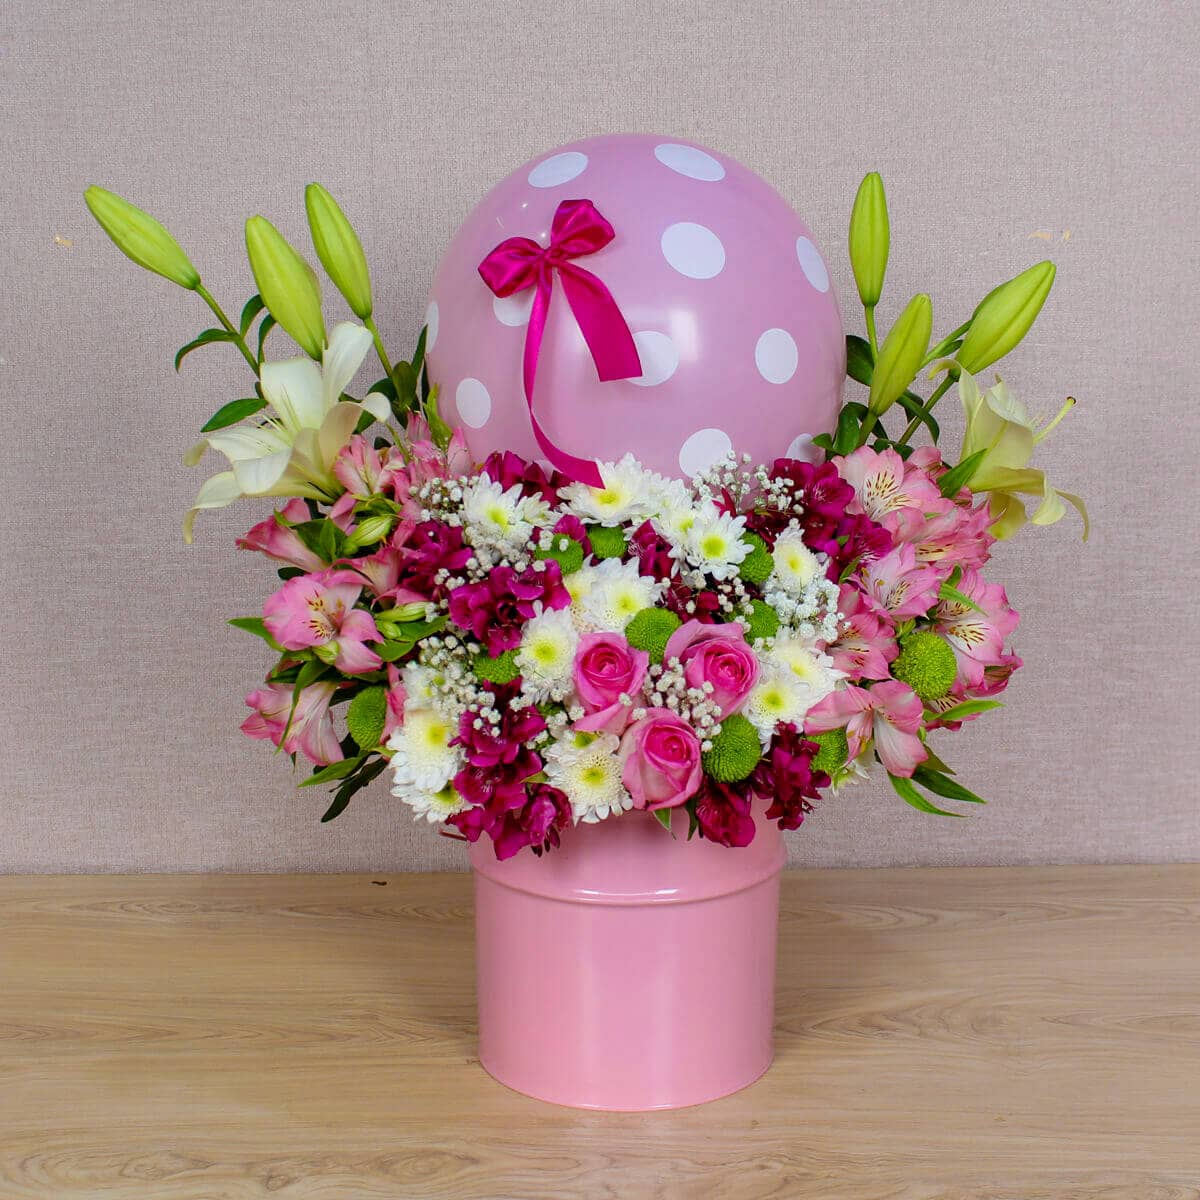 باکس گل زیبا آلنا مخصوص تولد با کمترین قیمت در سایت شرمیلا و در بخش تولد